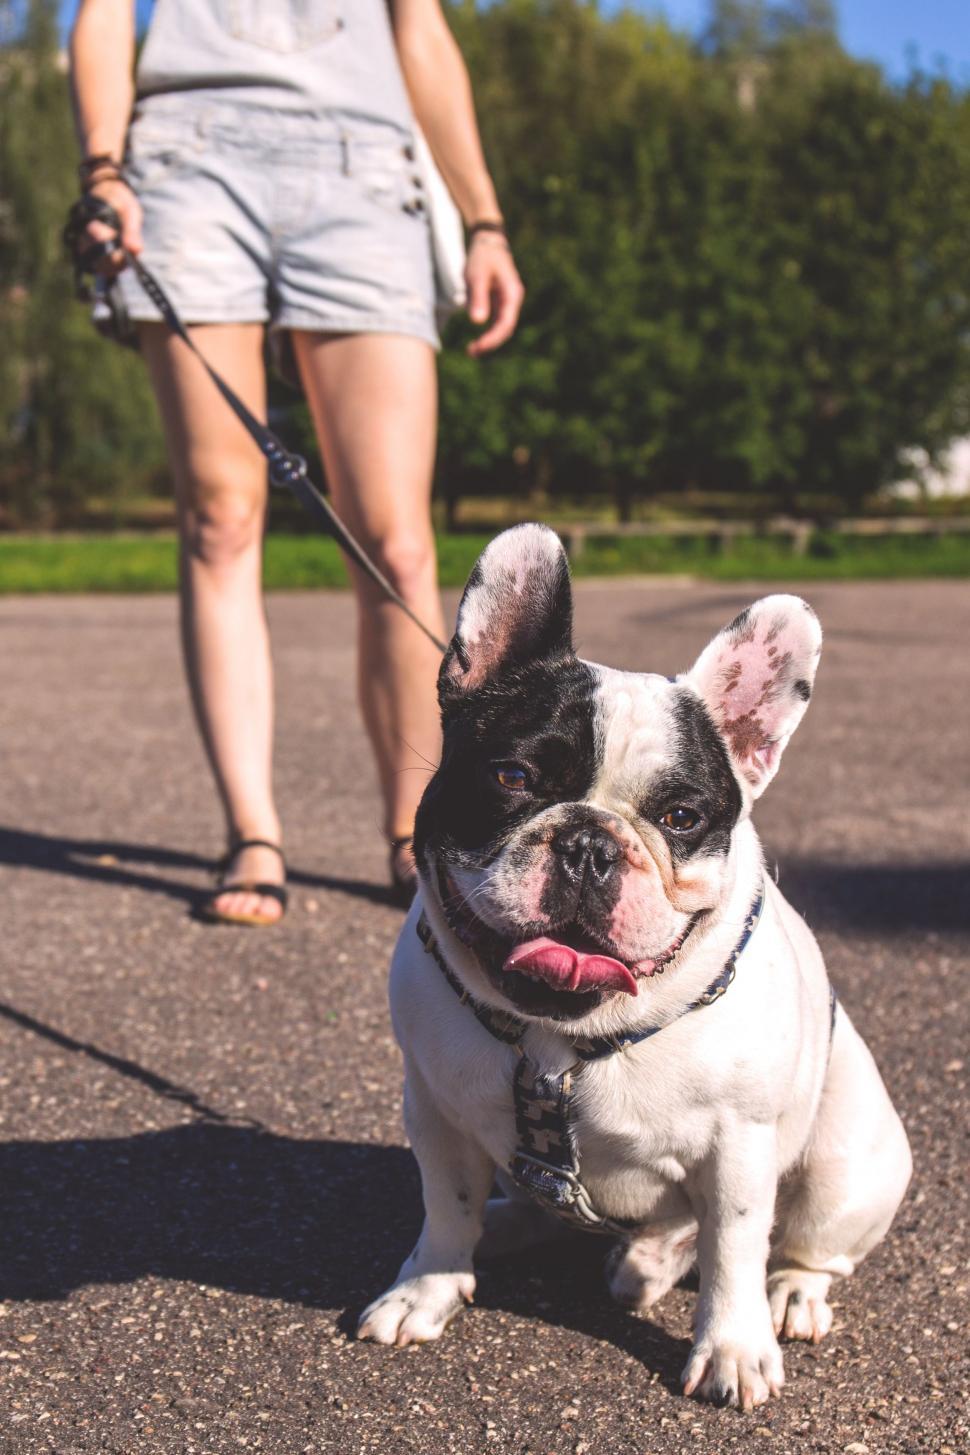 Free Image of Bulldog on leash - looking at camera  